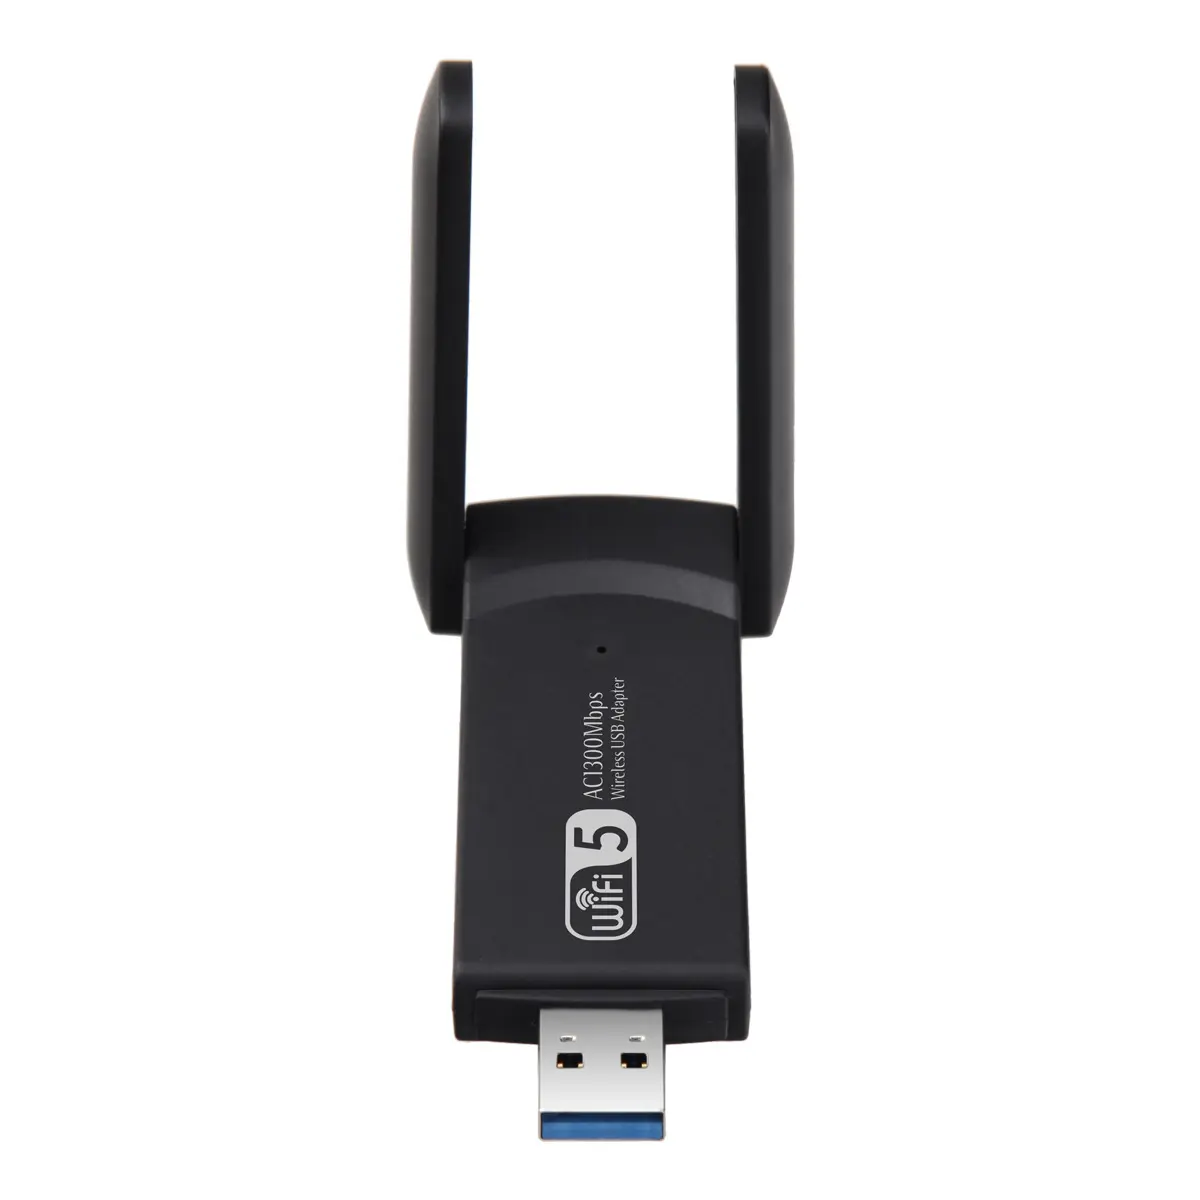 Adaptateur WiFi sans fil USB 1300Mbps Double bande 2.4G 5Ghz USB 3.0 WIFI Adaptateur USB 802.11ac avec antenne BT4.2 pour ordinateur de bureau et portable